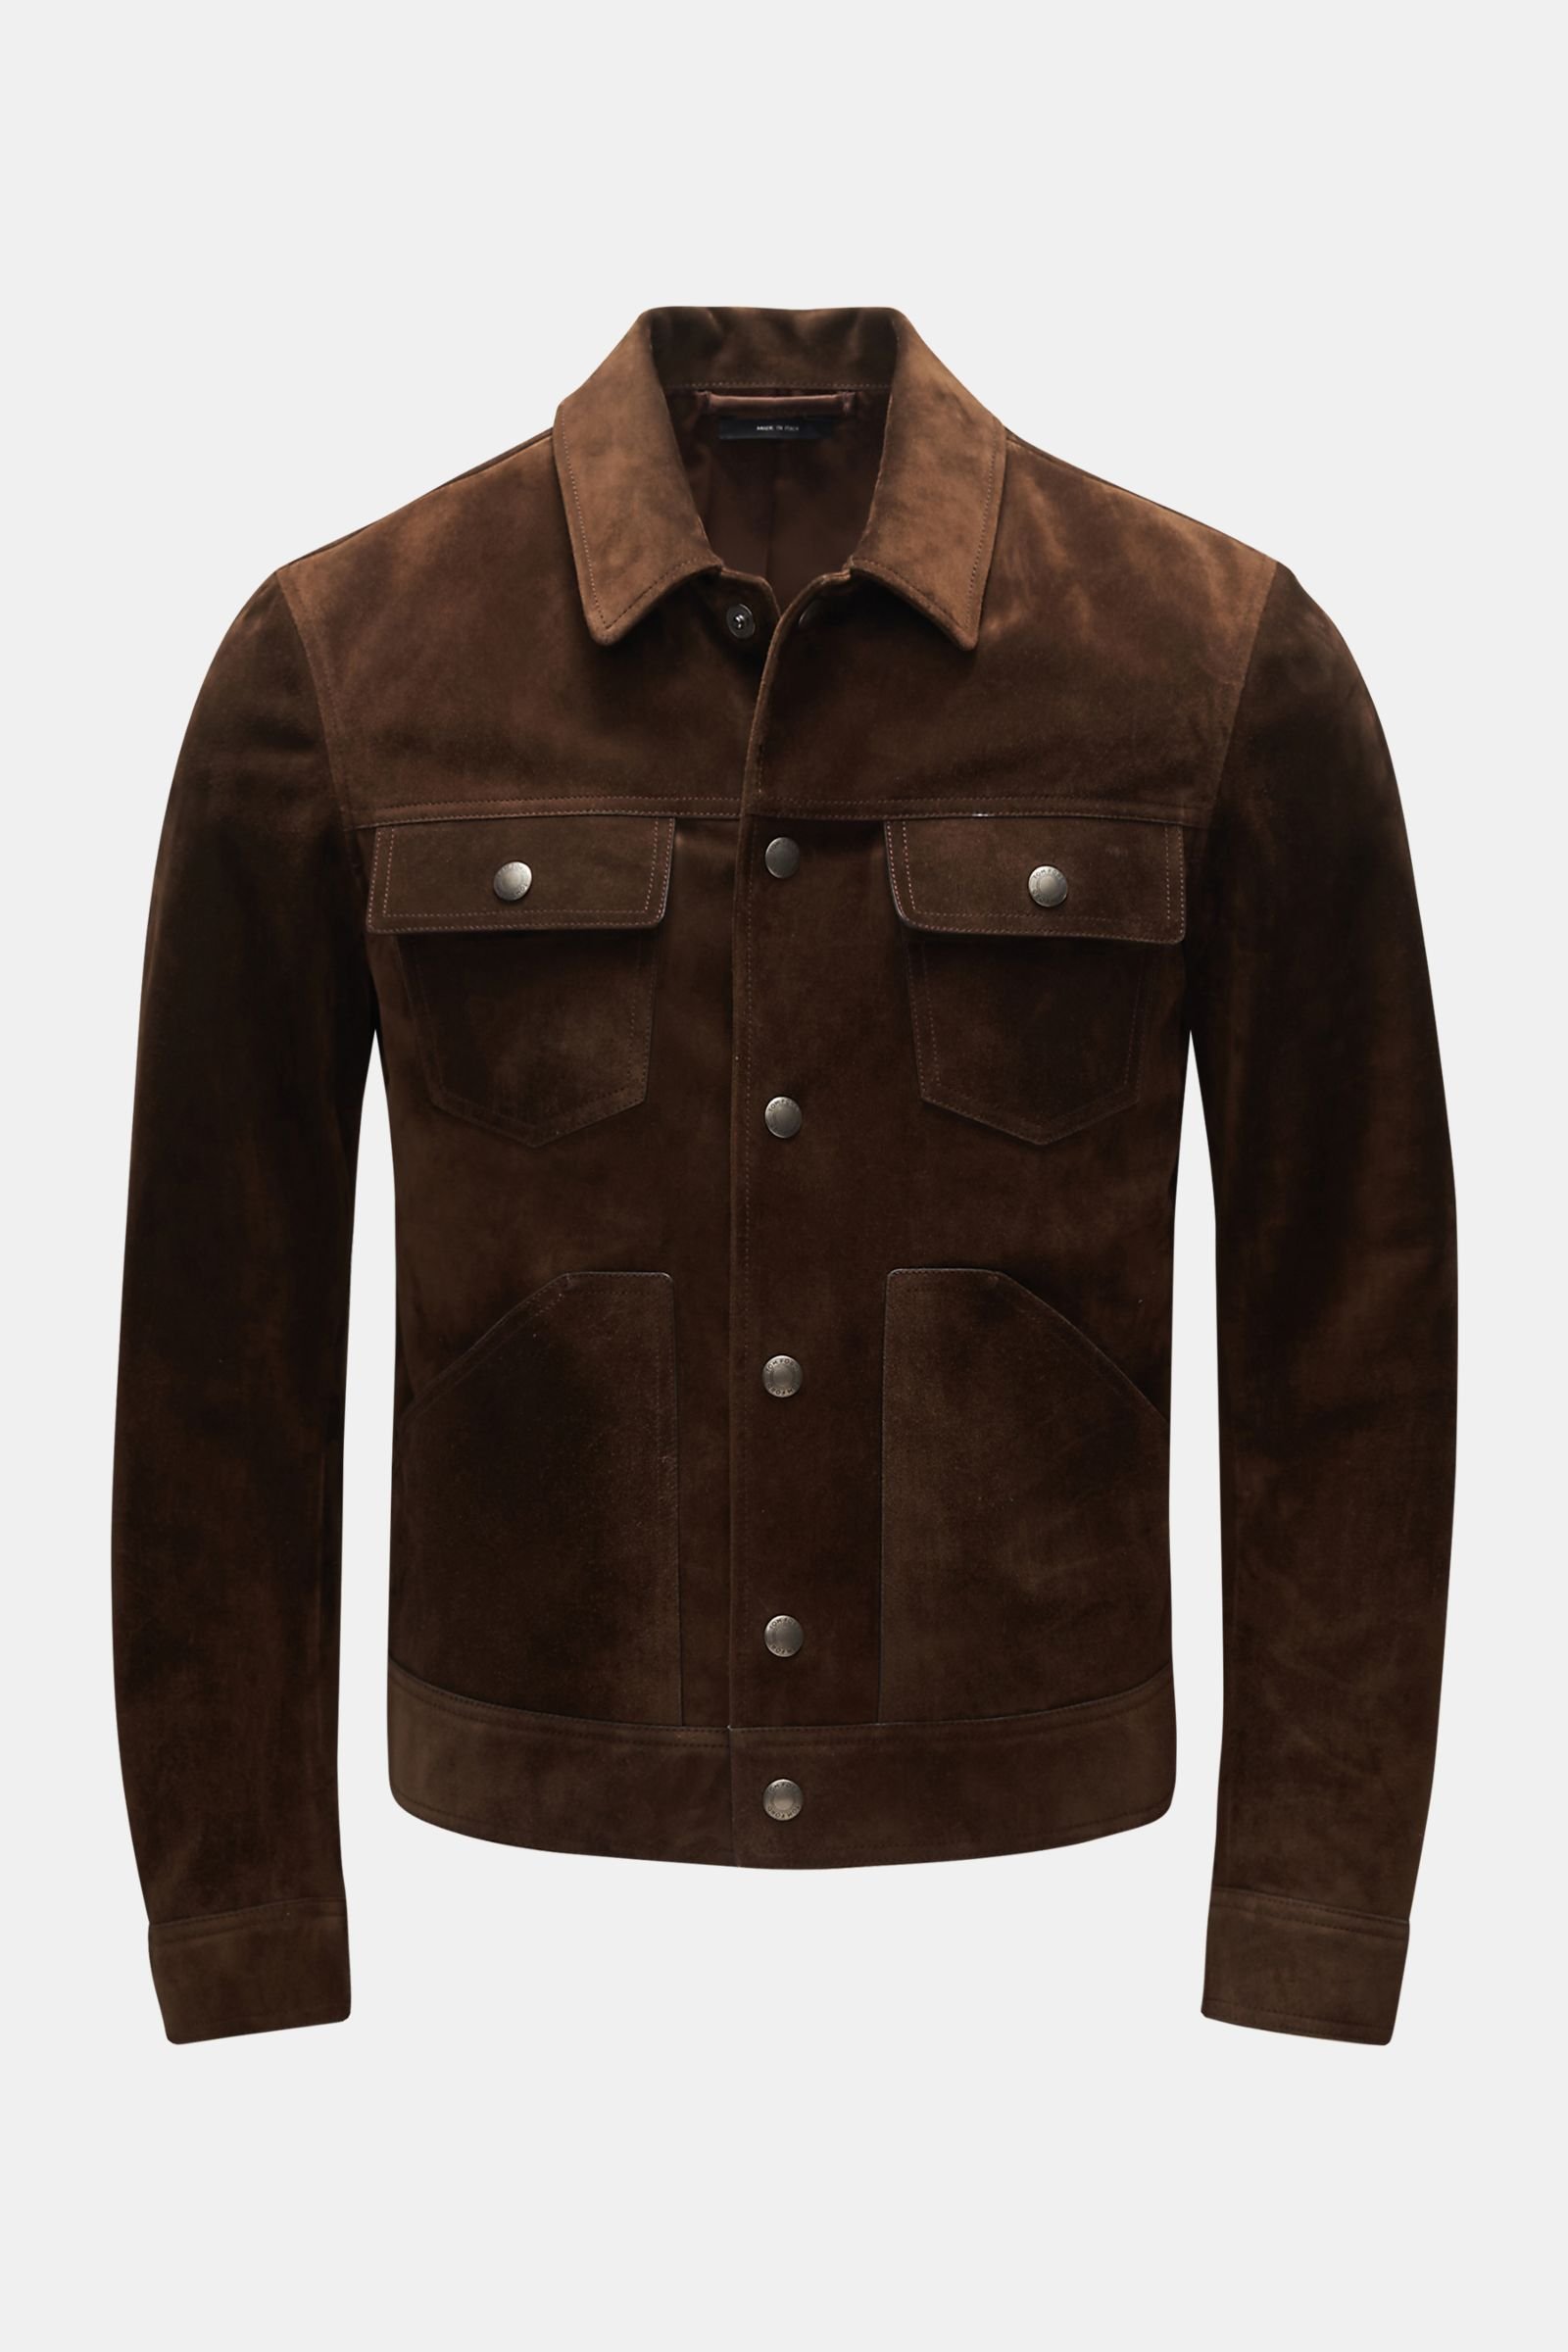 TOM FORD suede jacket dark brown | BRAUN Hamburg